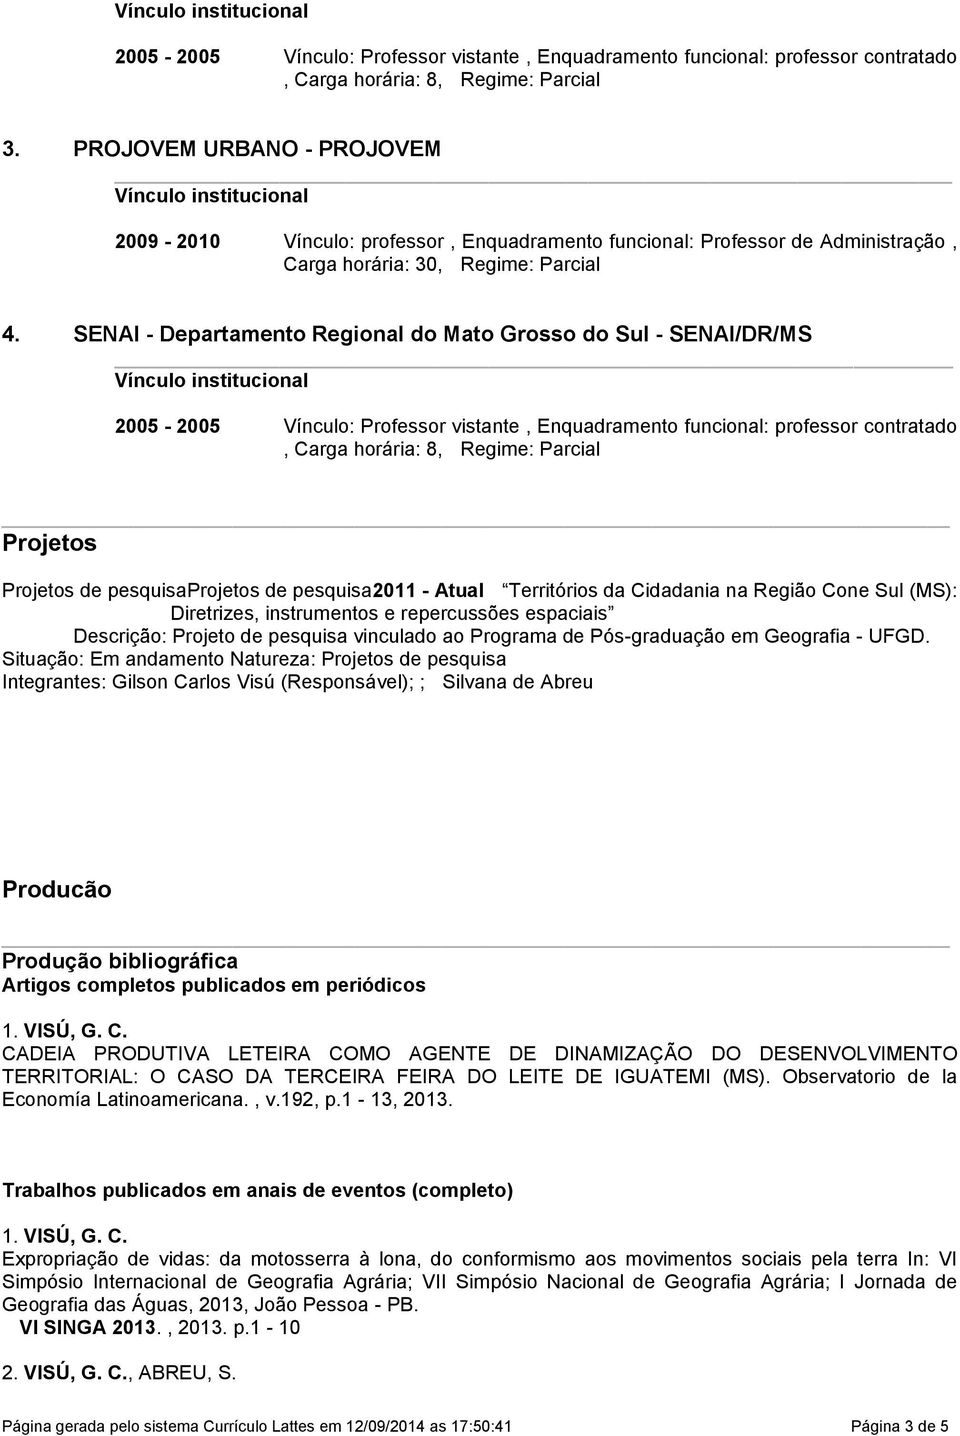 SENAI - Departamento Regional do Mato Grosso do Sul - SENAI/DR/MS 2005-2005 Vínculo: Professor vistante, Enquadramento funcional: professor contratado, Carga horária: 8, Regime: Parcial Projetos